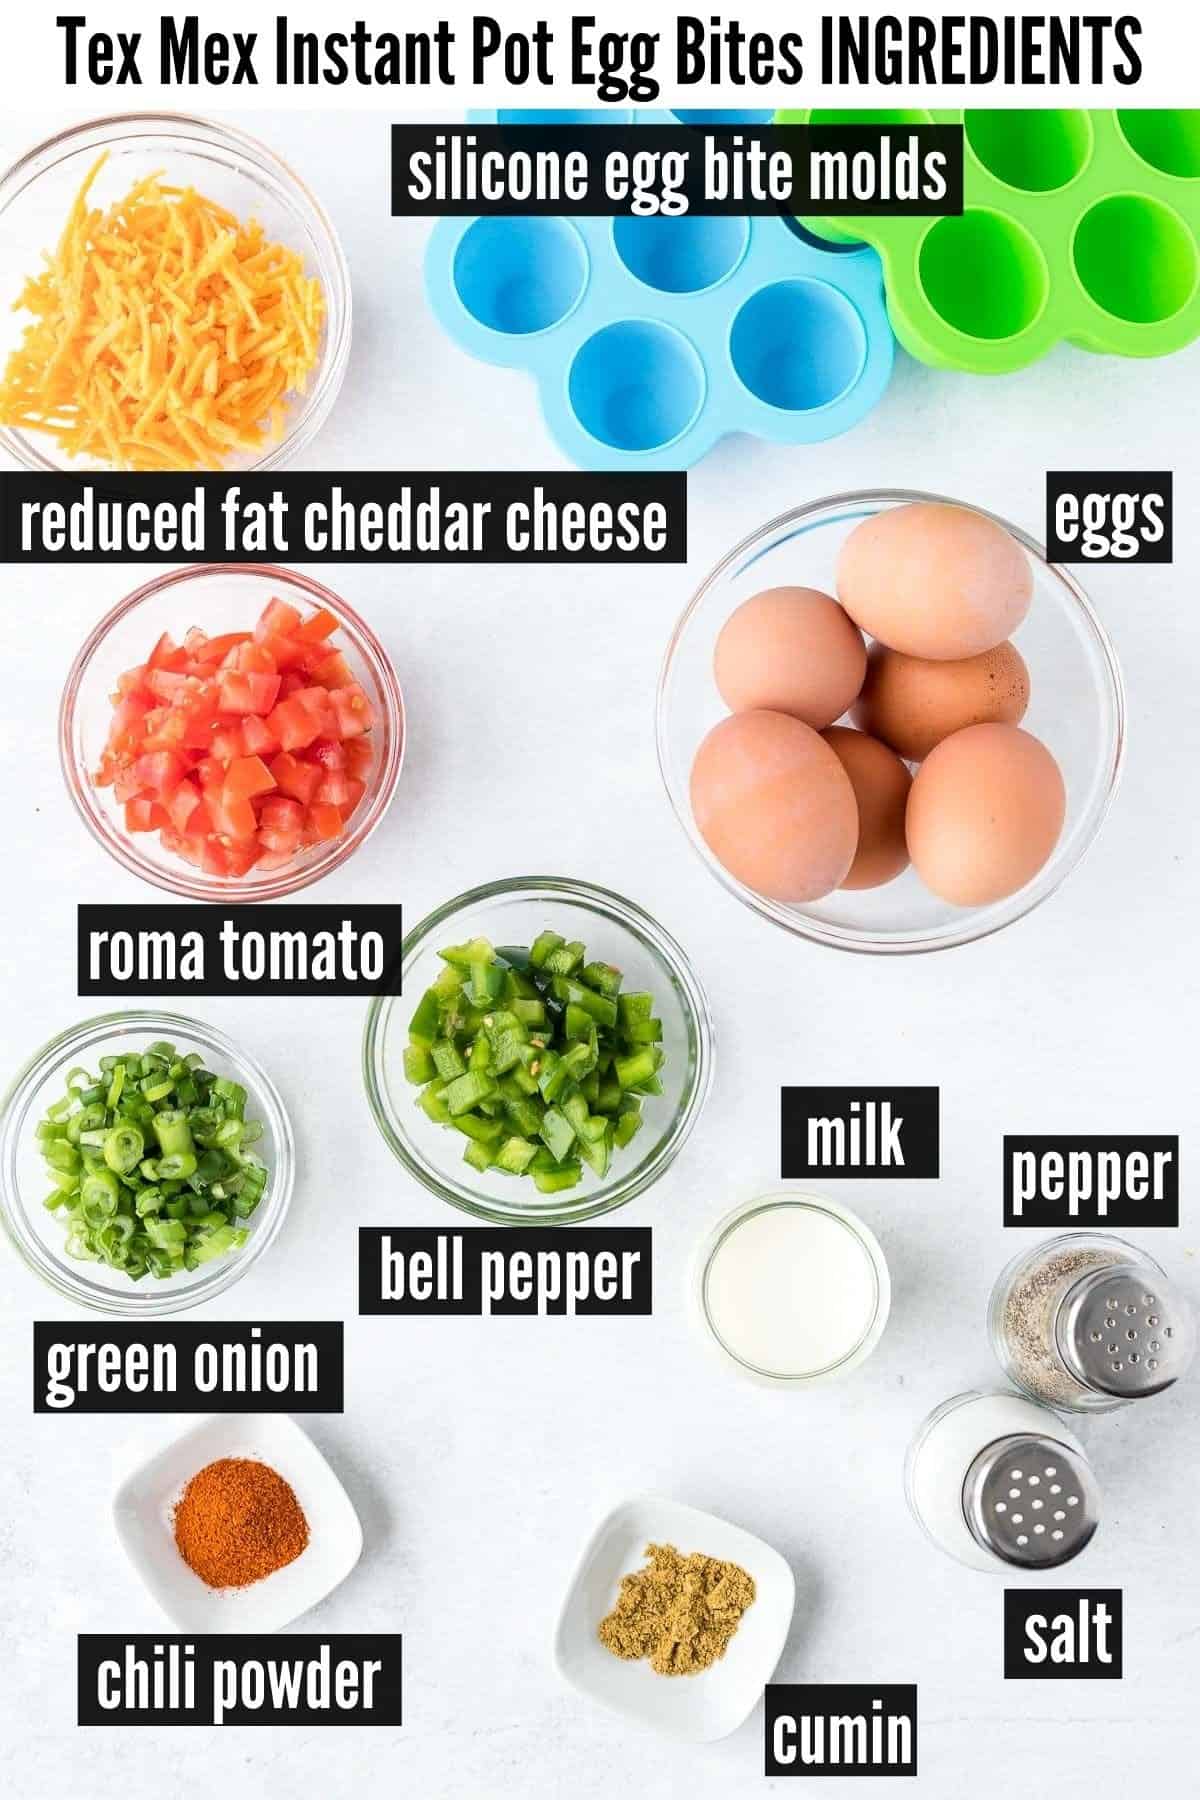 instant pot egg bites labelled ingredients